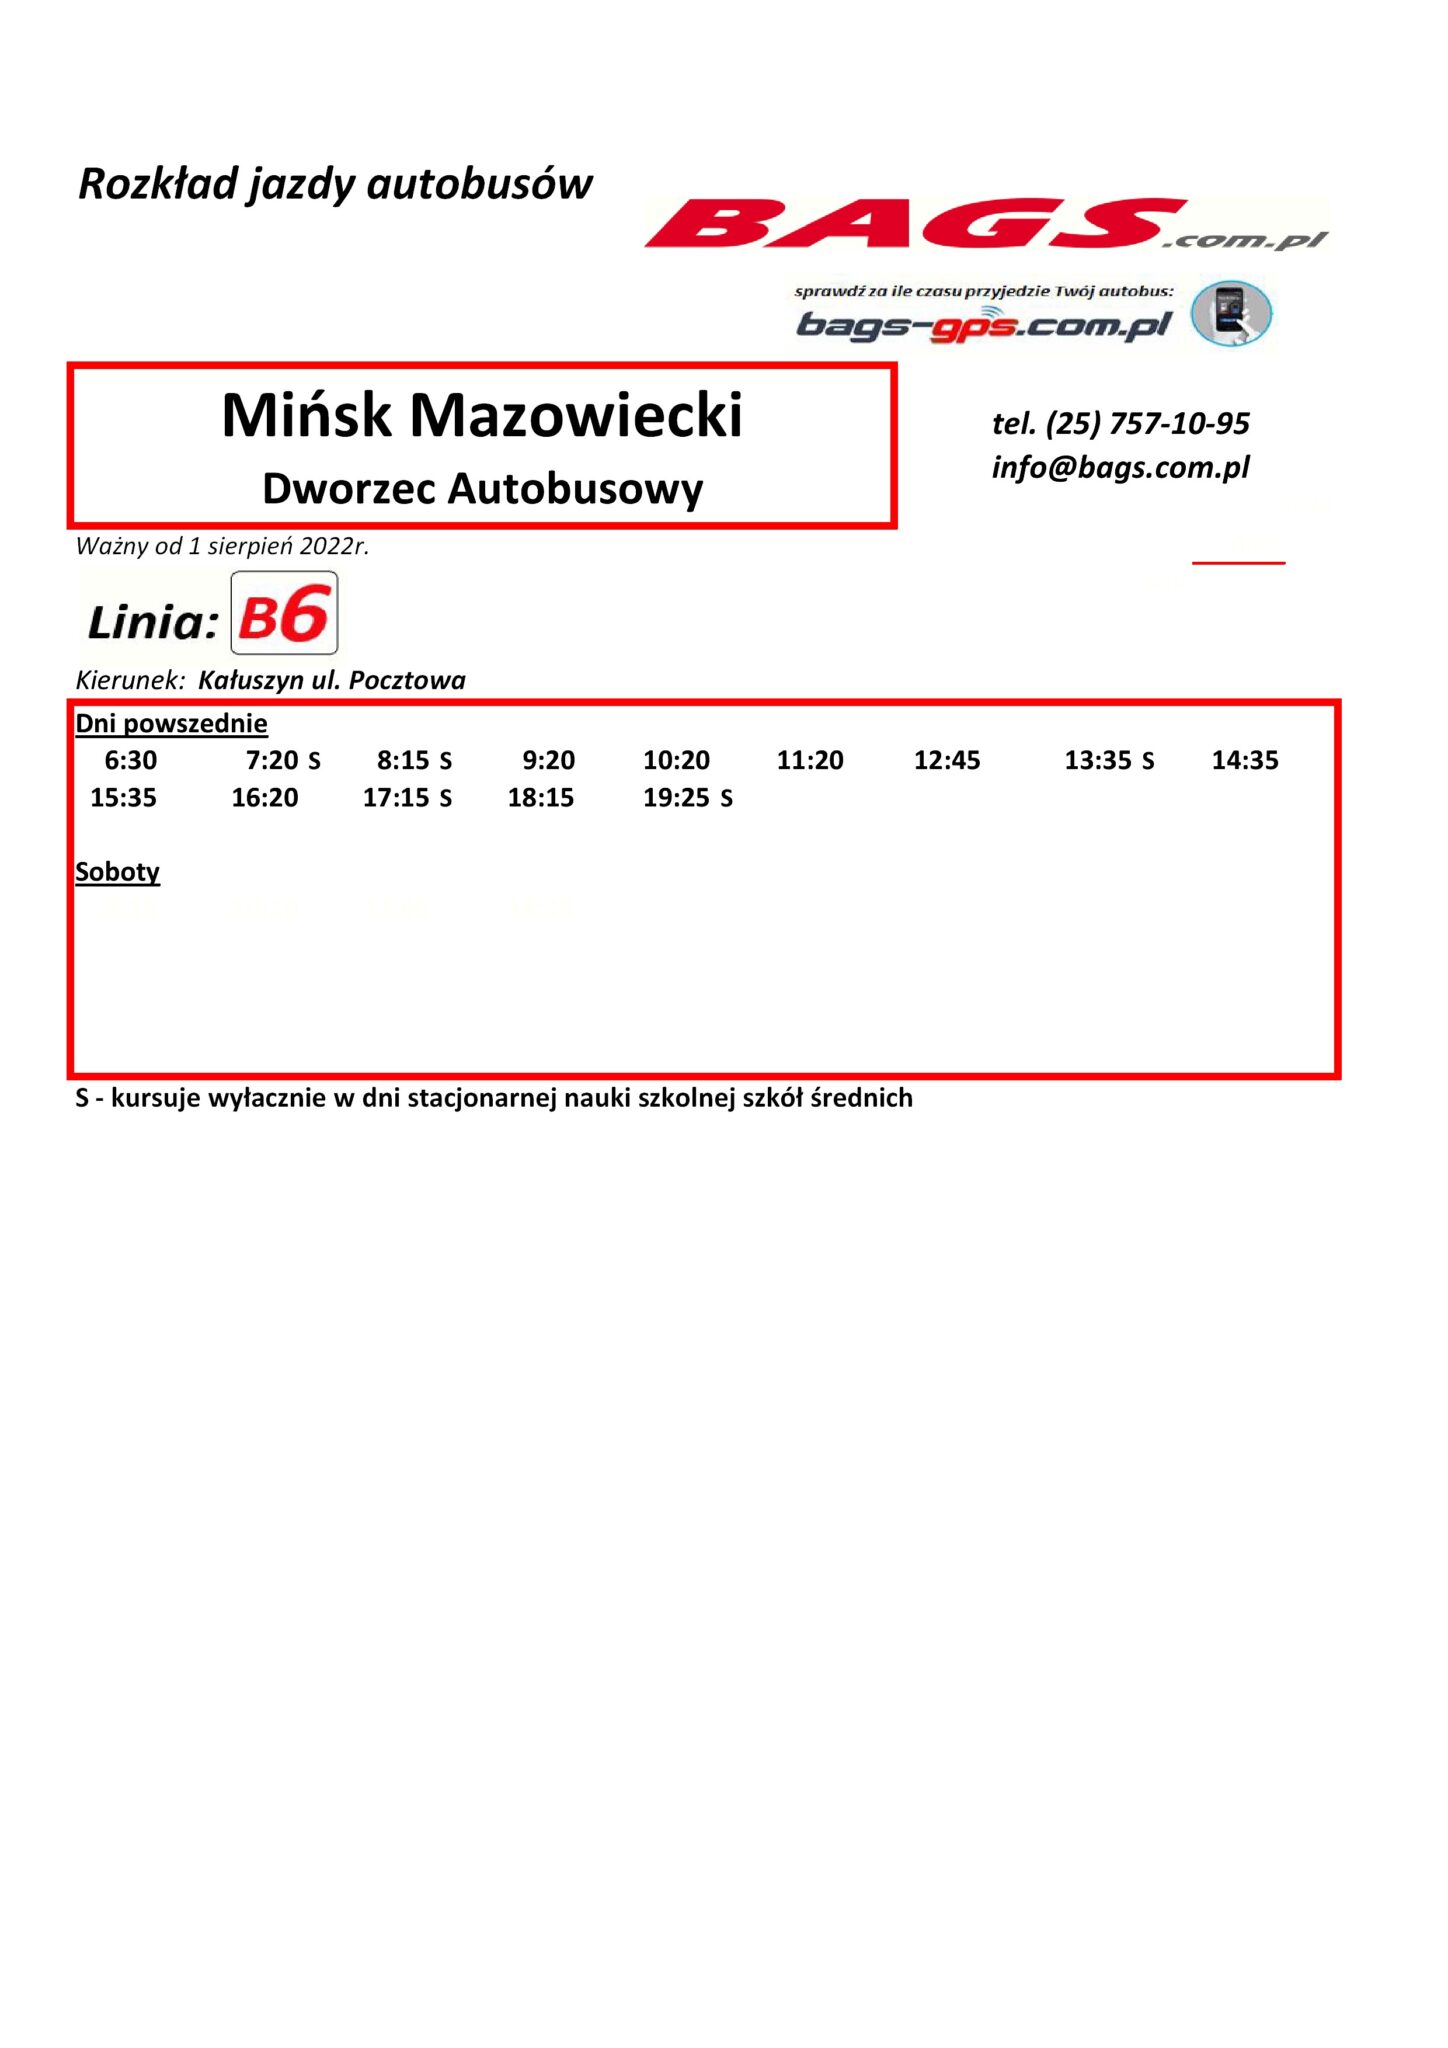 Minsk-Maz.-Dworzec-Autobusowy--1448x2048 (1)